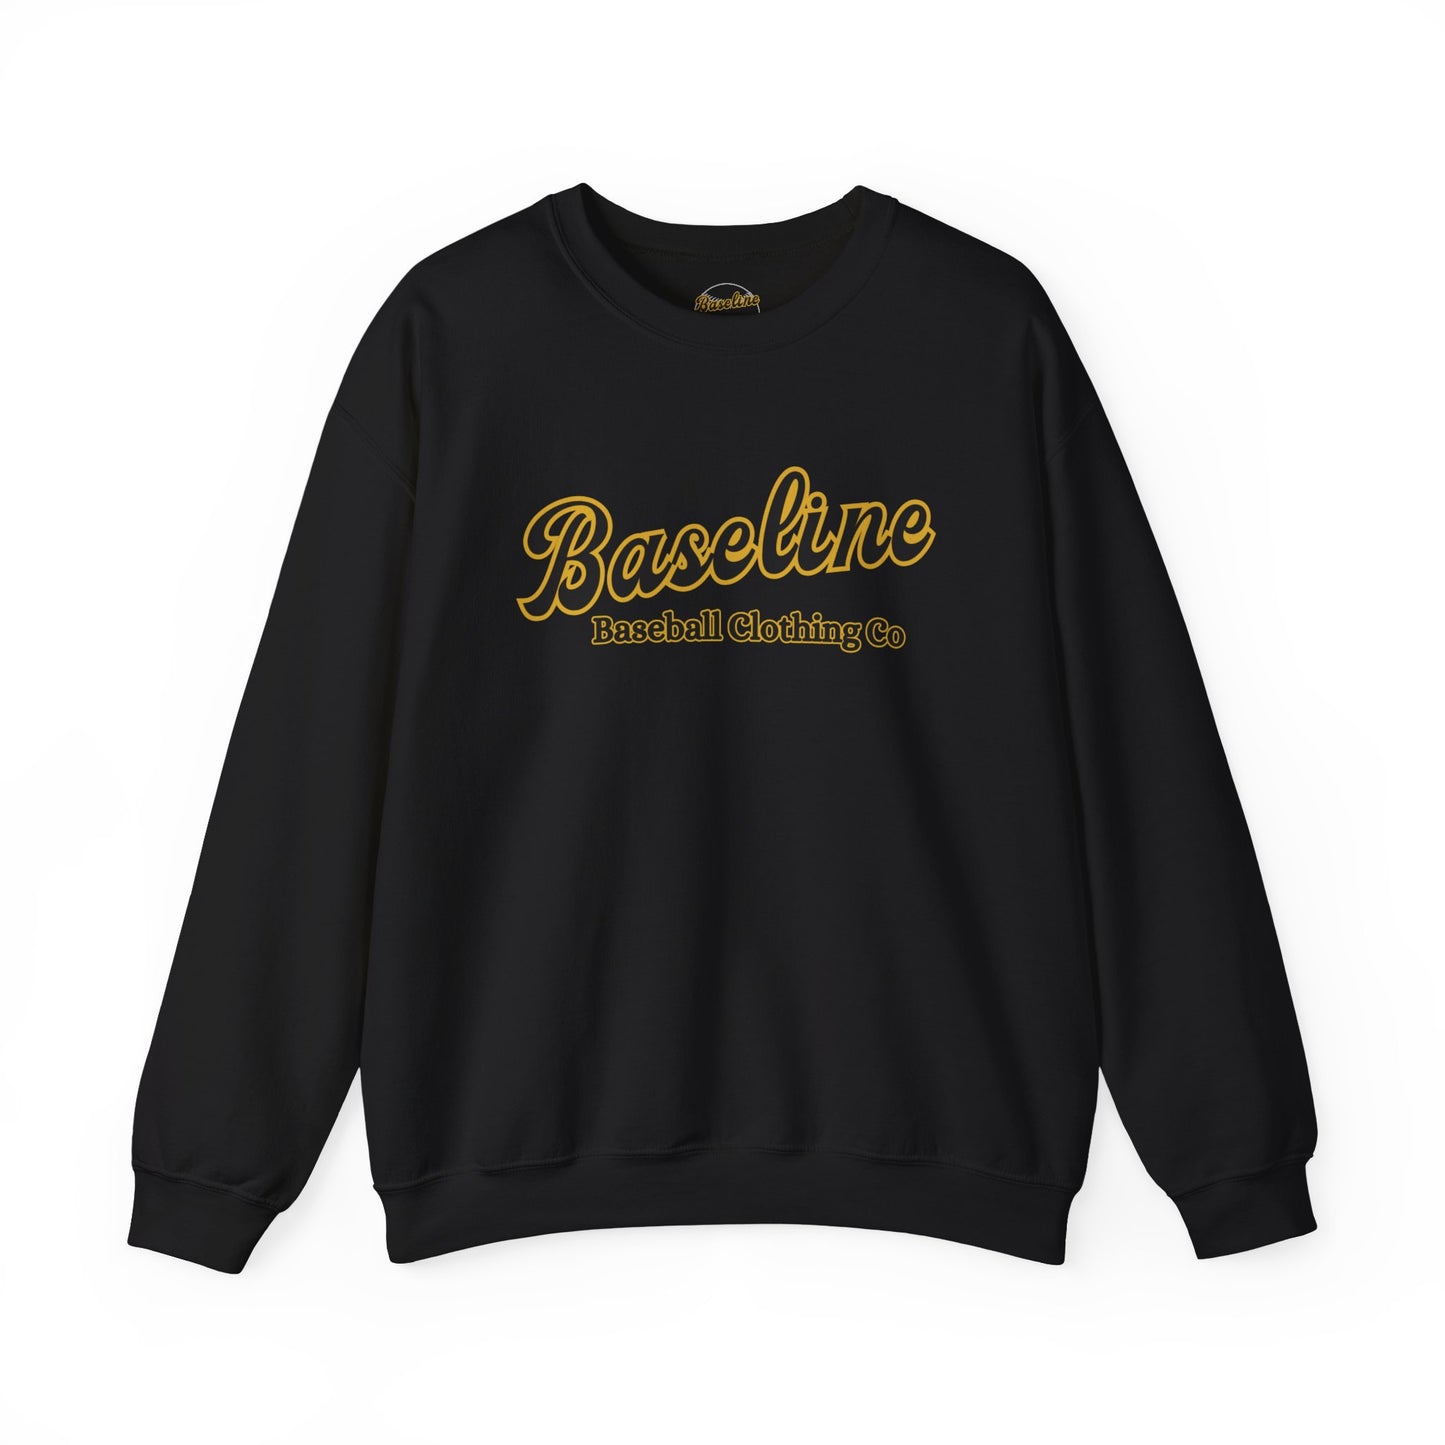 Baseline Clothing Co. Crewneck Sweatshirt